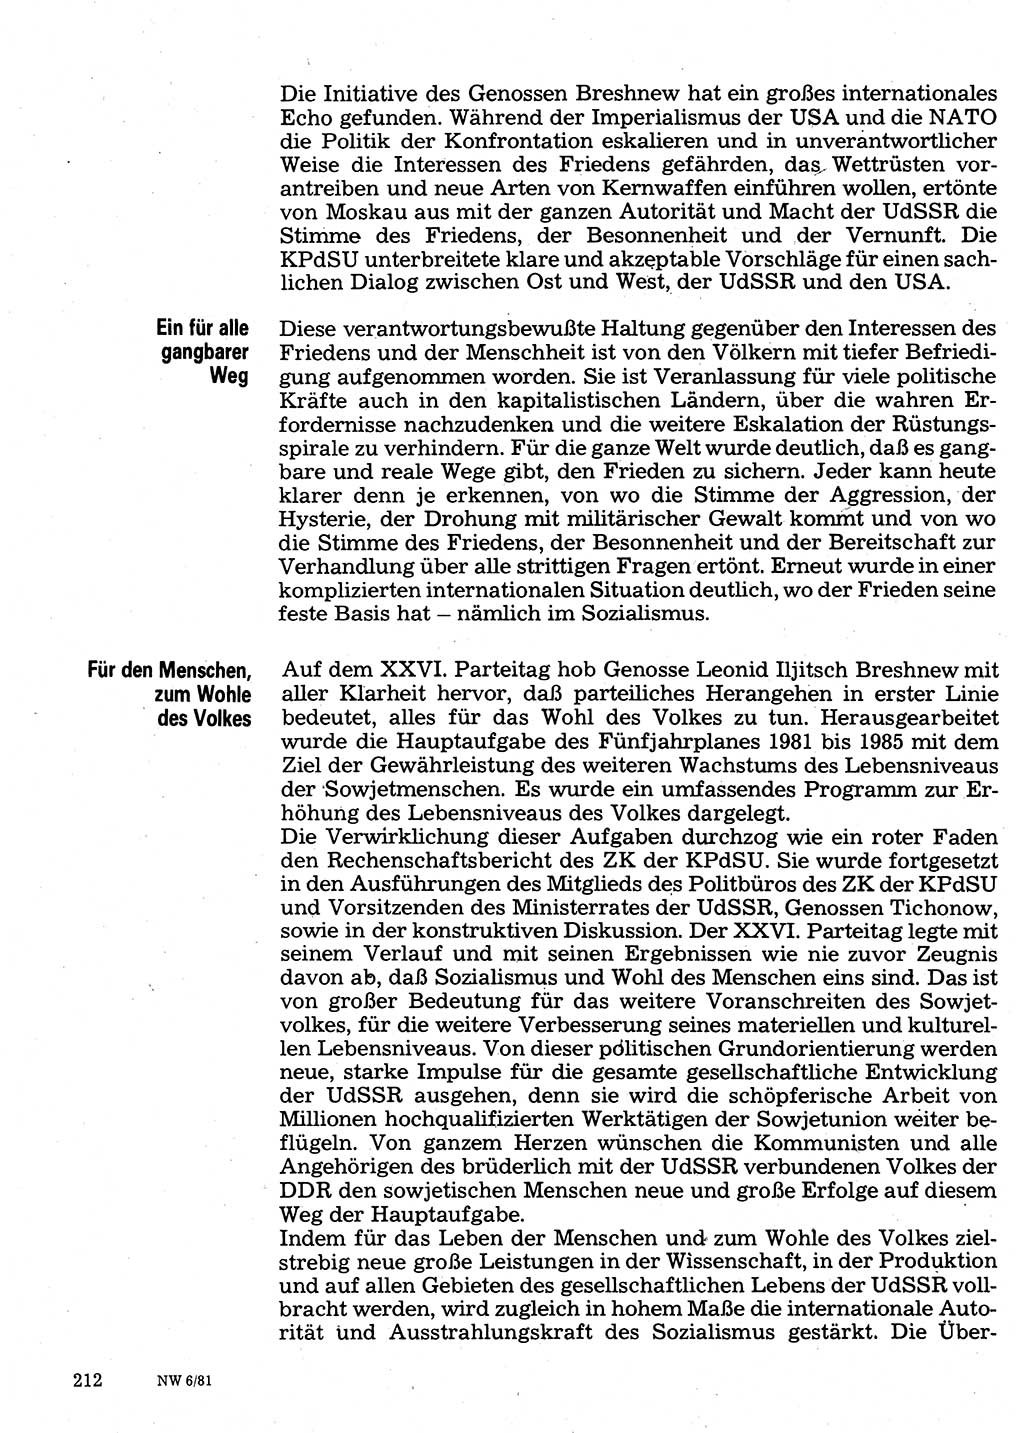 Neuer Weg (NW), Organ des Zentralkomitees (ZK) der SED (Sozialistische Einheitspartei Deutschlands) für Fragen des Parteilebens, 36. Jahrgang [Deutsche Demokratische Republik (DDR)] 1981, Seite 212 (NW ZK SED DDR 1981, S. 212)